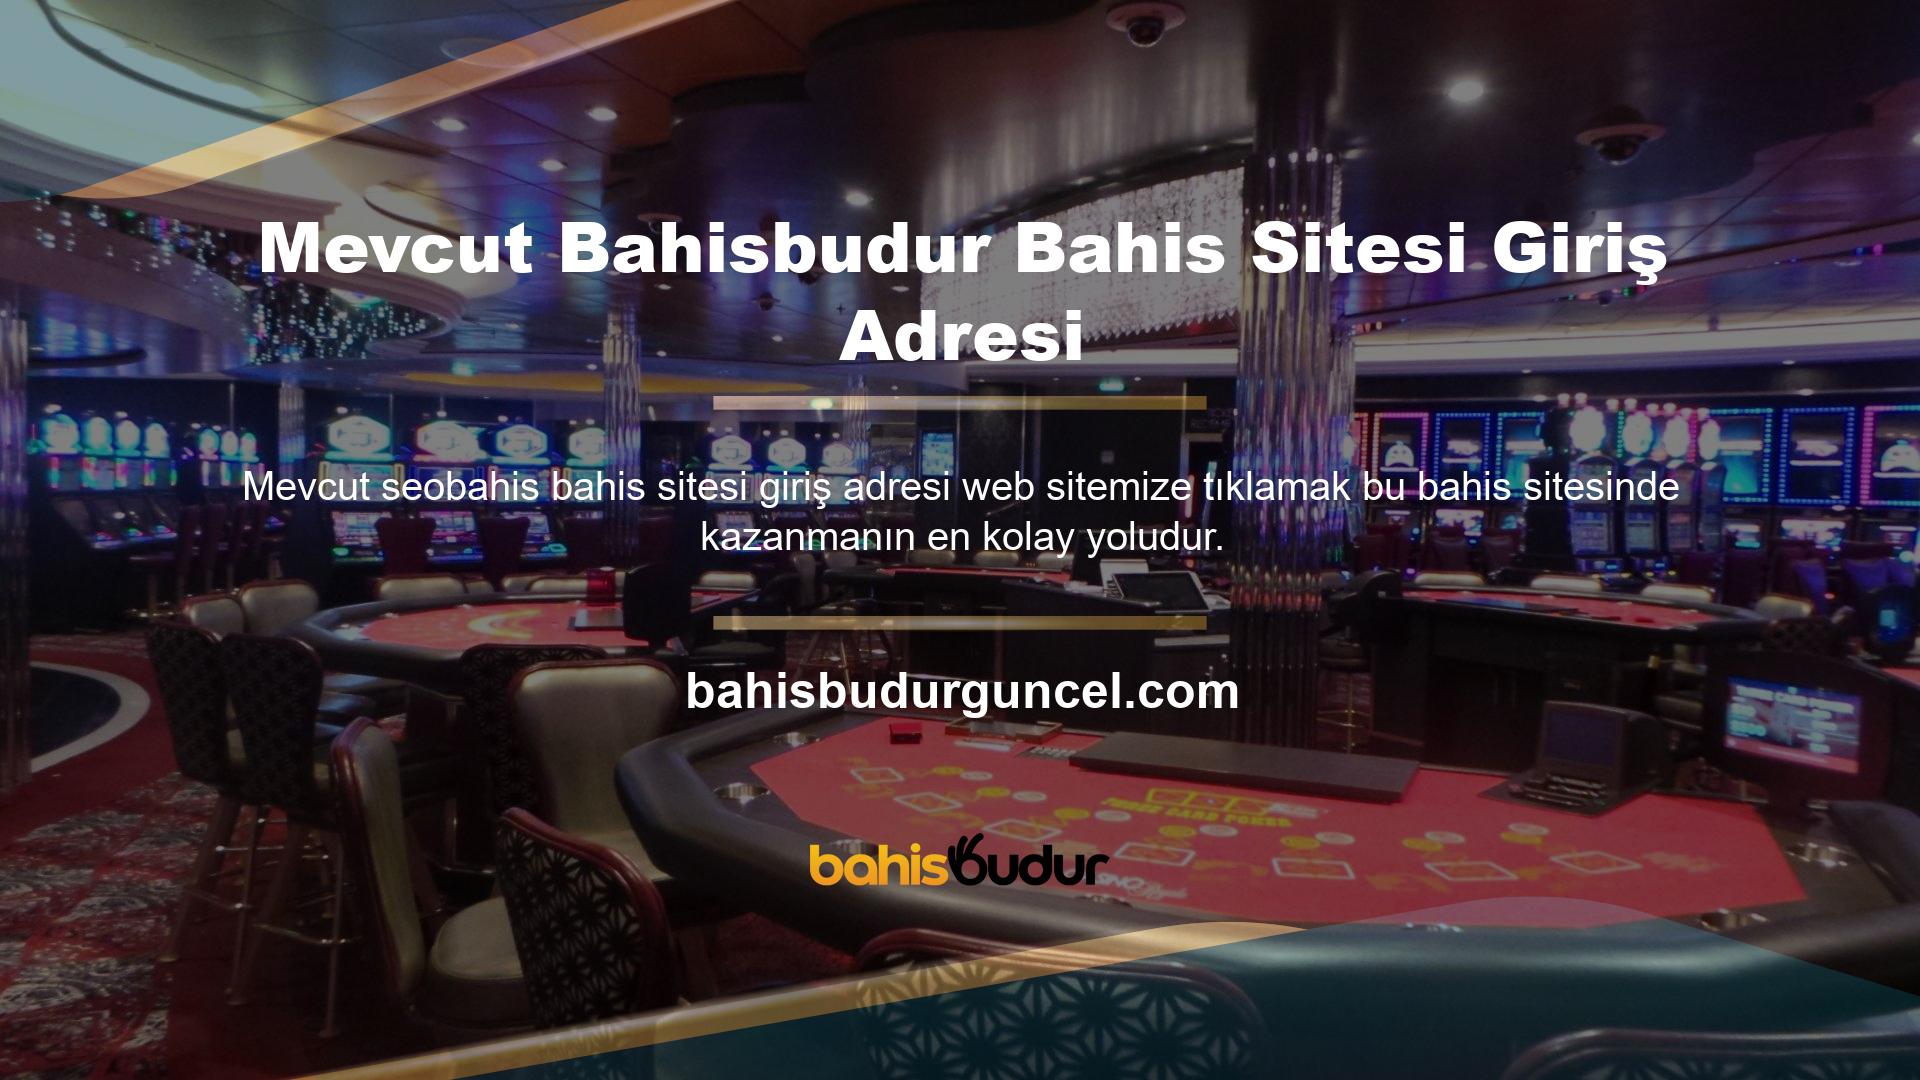 Bahisbudur yeni adresi ve güncel ziyaret adresi sitemizde tek tıkla bulunabilir